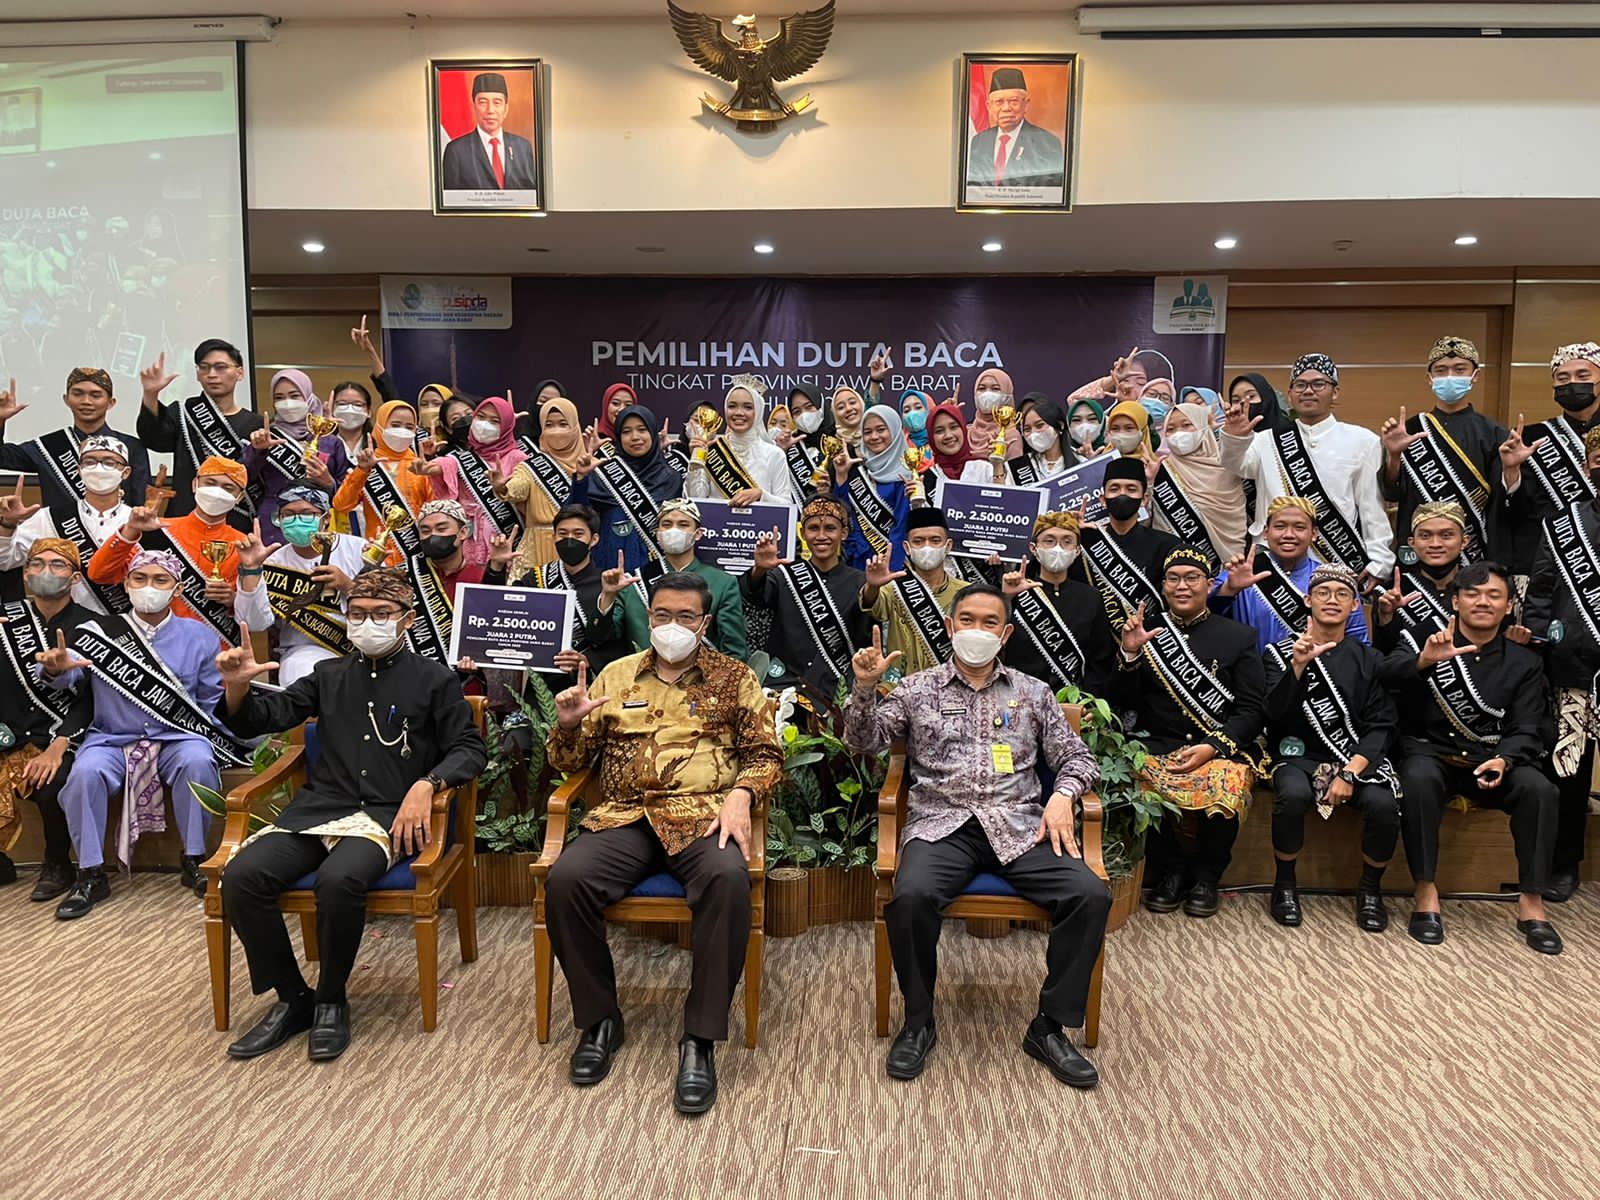 Foto Pemilihan Duta Baca Jawa Barat 2022